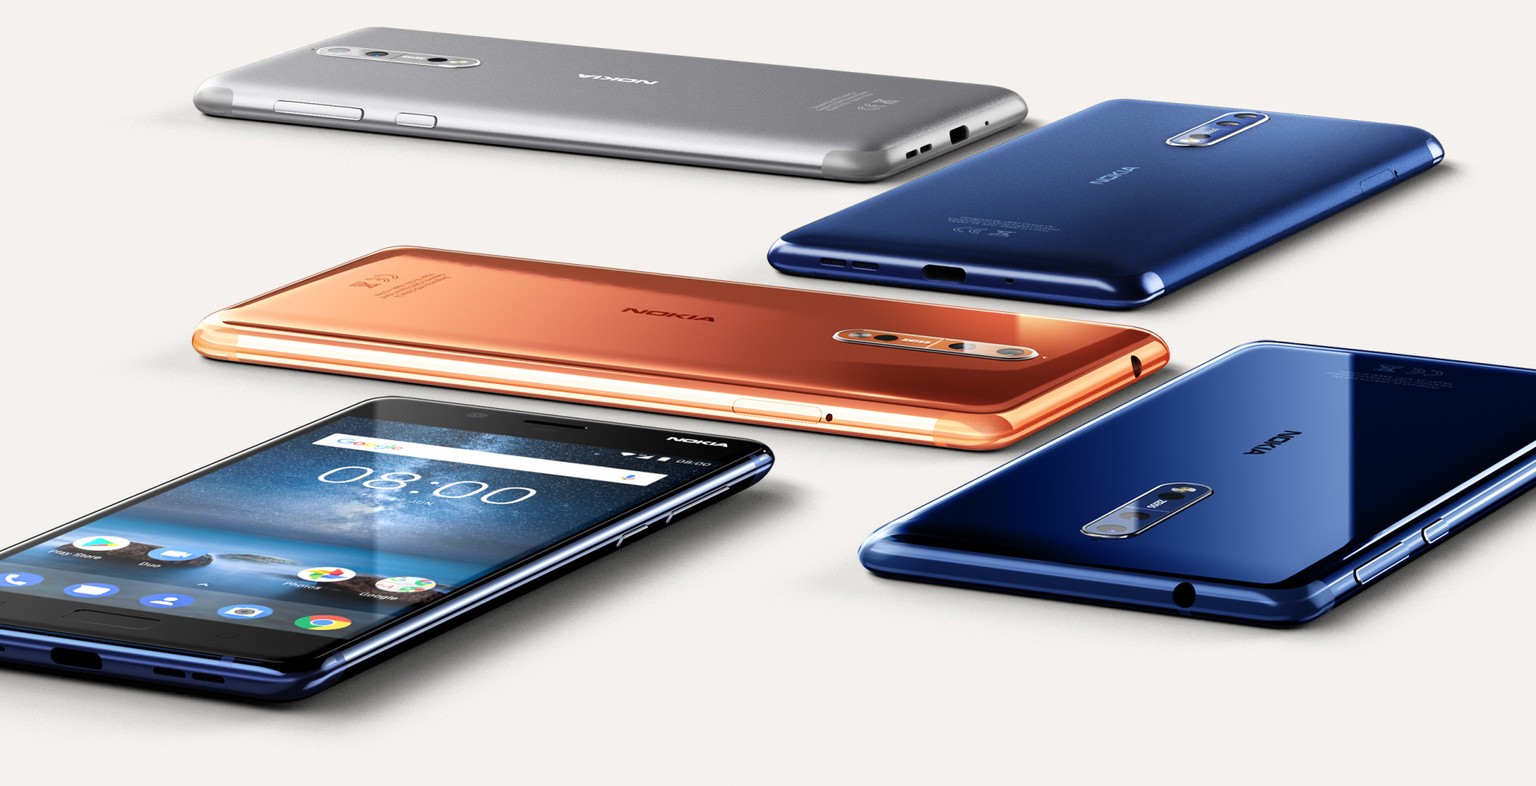 Das Smartphone von HMD gibt es in vier Farbvarianten: Stahlgrau, mattes Blau, hochglanz Blau und hochglanz Kupfer.